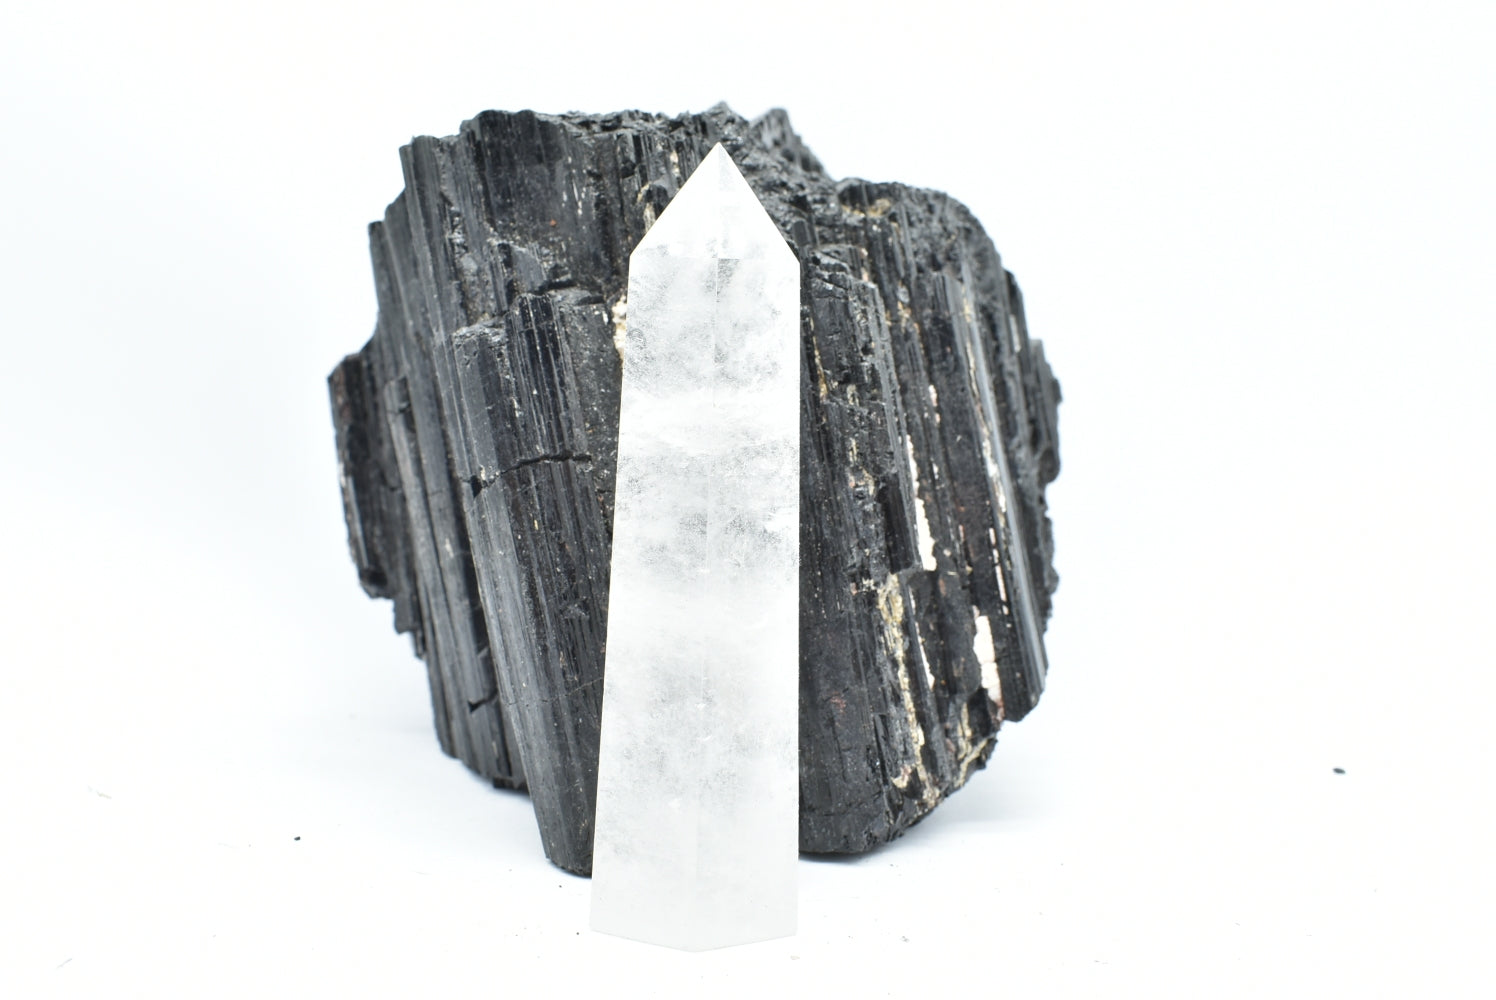 Tip of Polished Rock Crystal - Hyaline Quartz